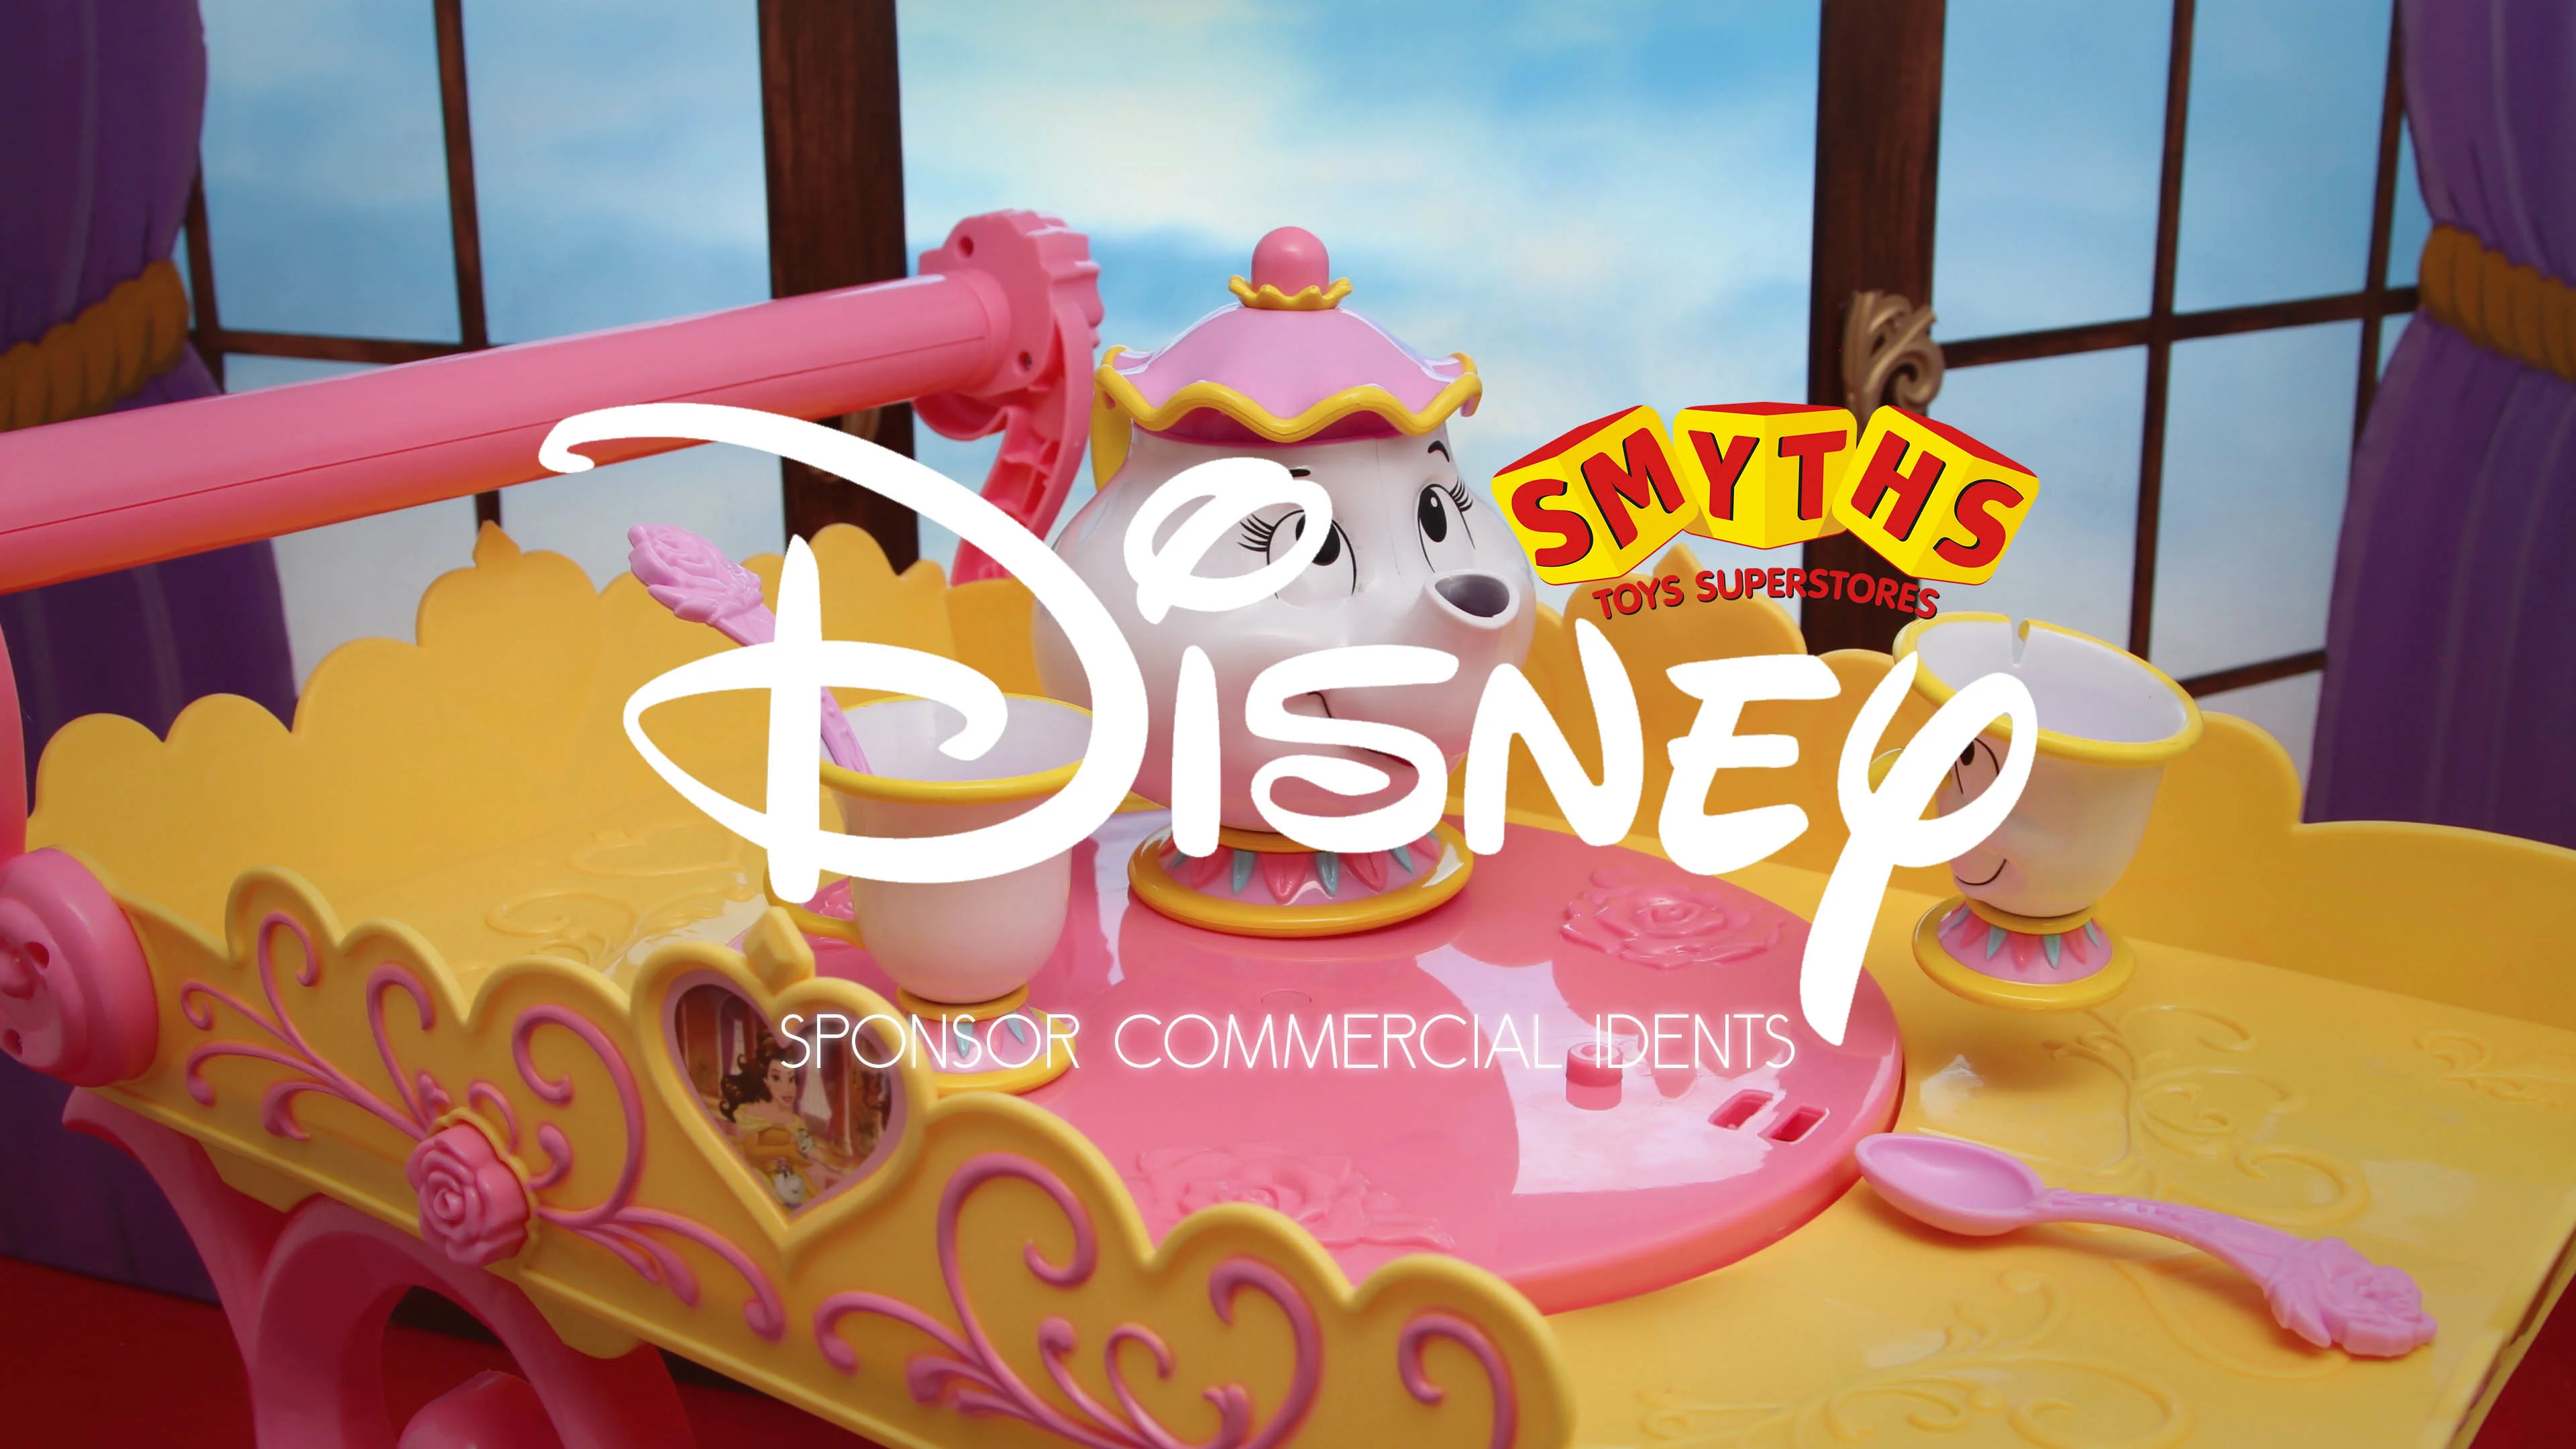 Smyths Toys Superstore - Sponsors You've Been Framed on Vimeo